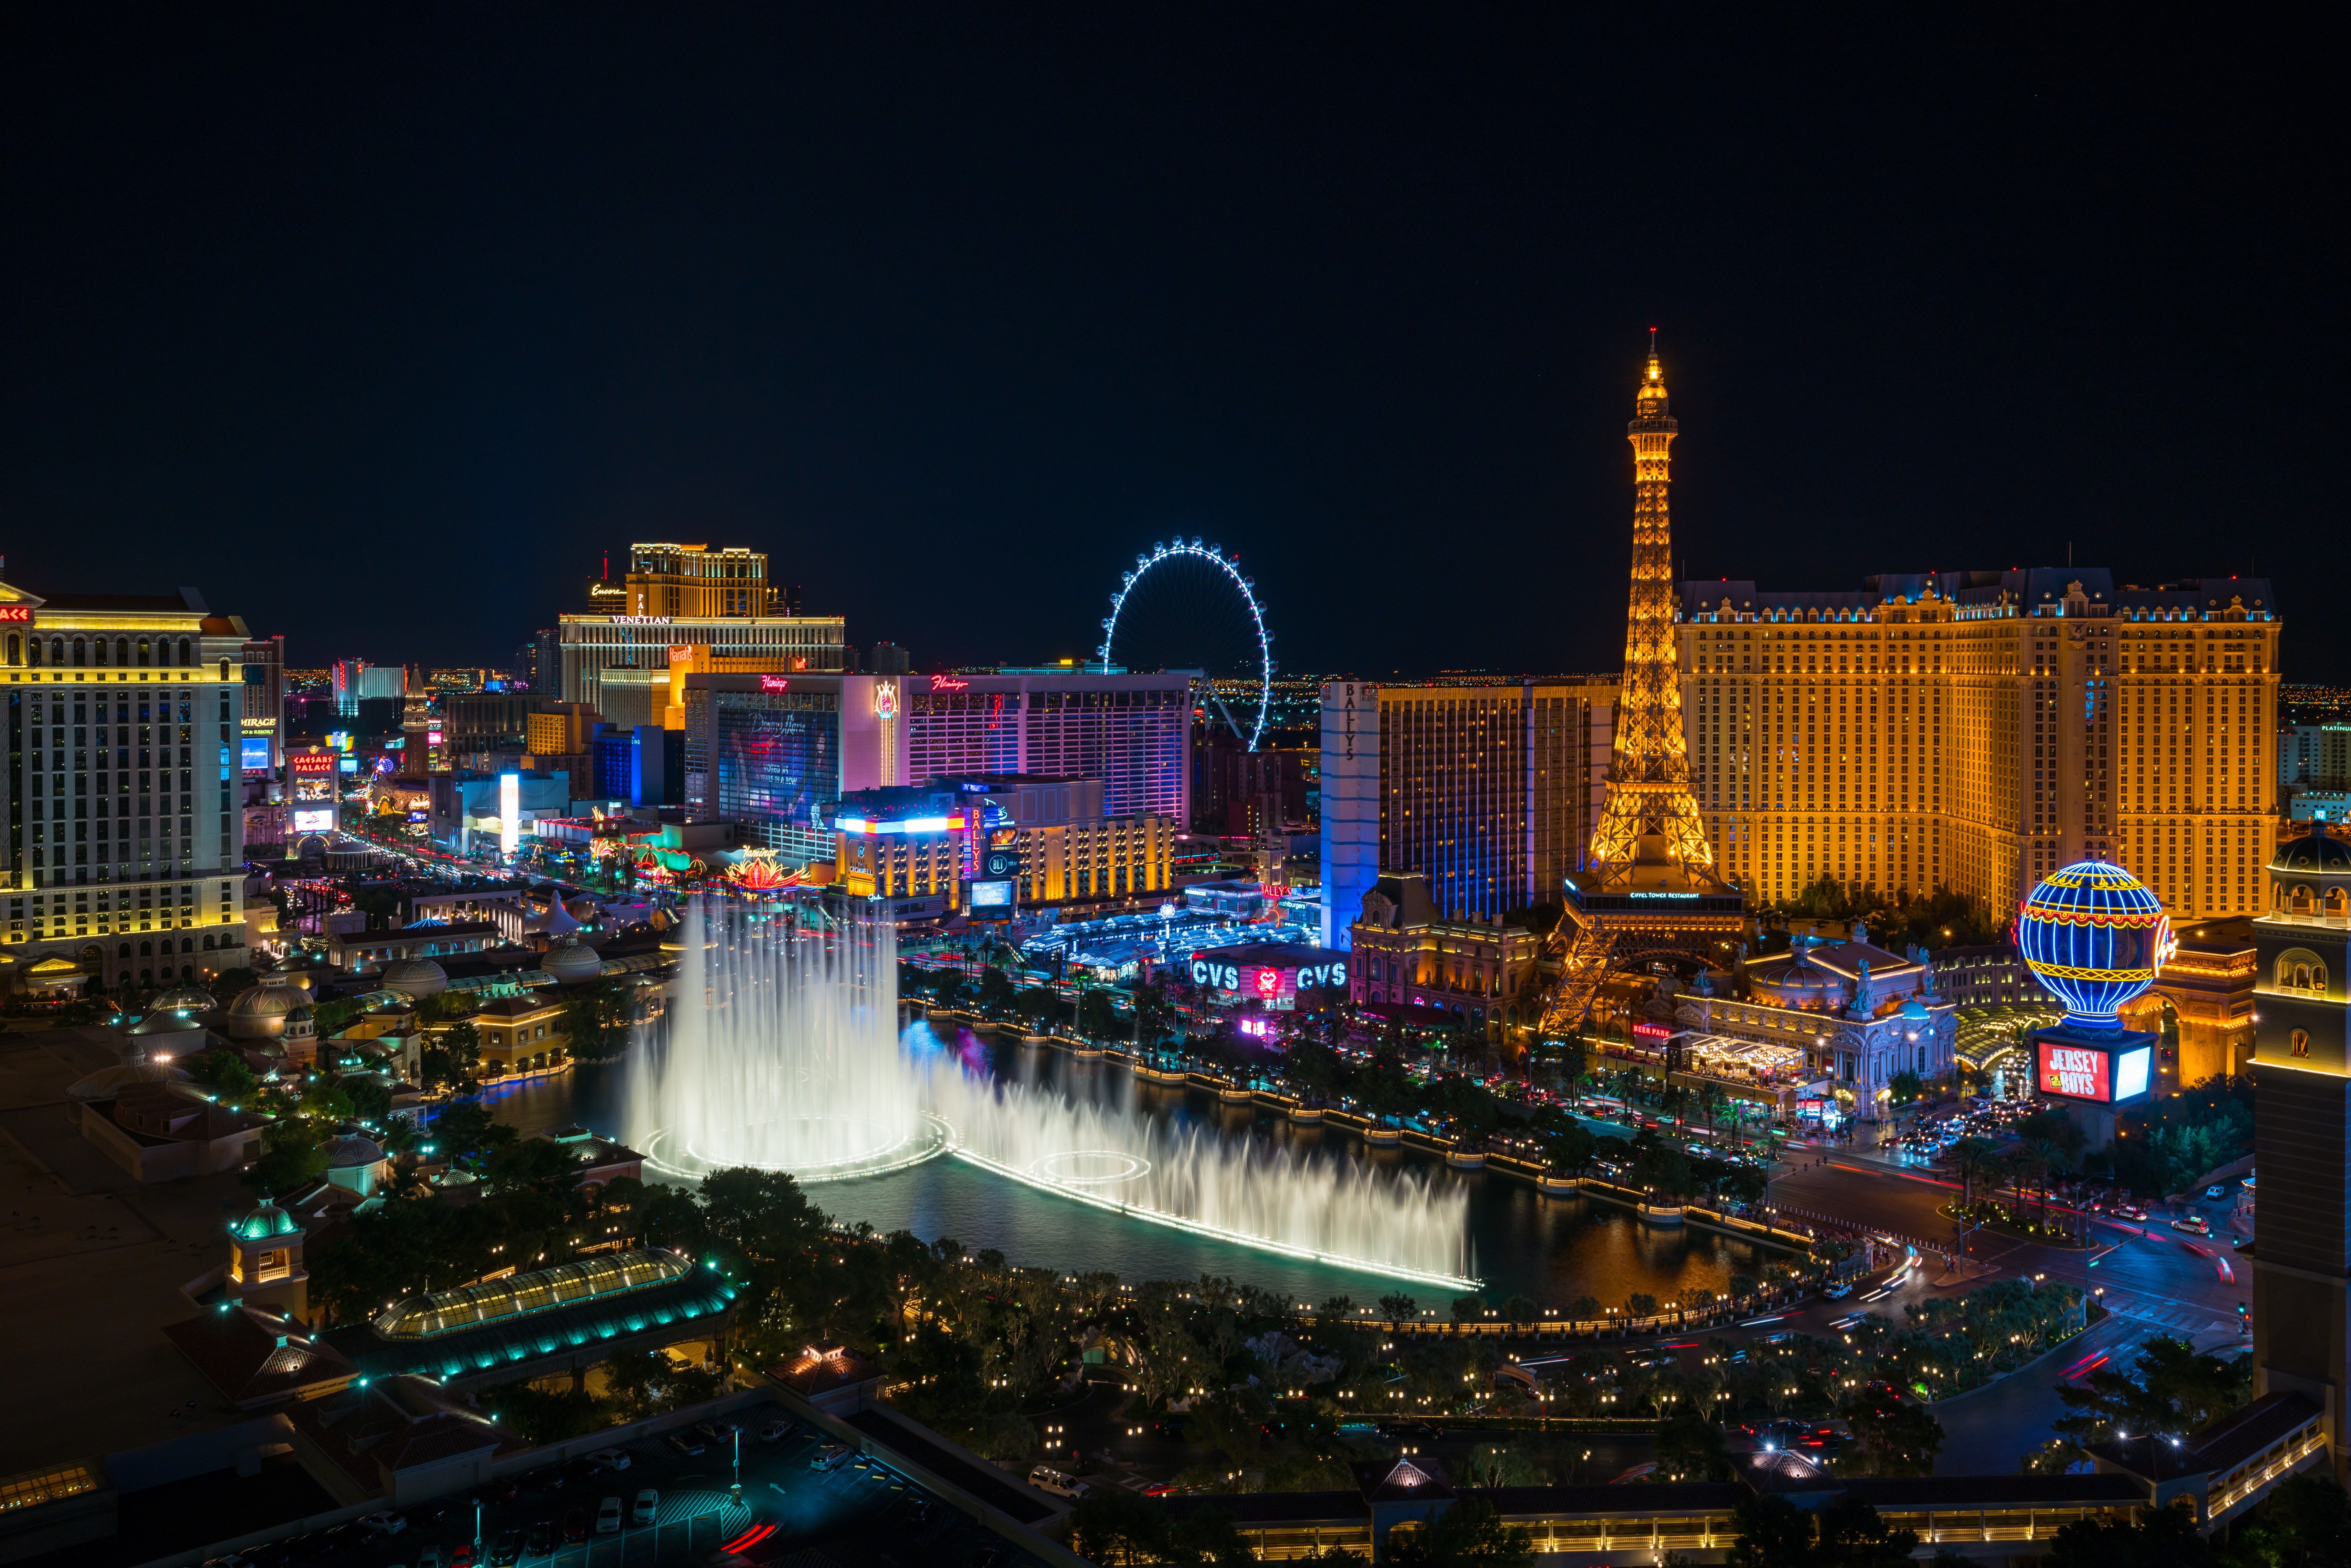 The 10 Most Instagrammable Spots in Las Vegas